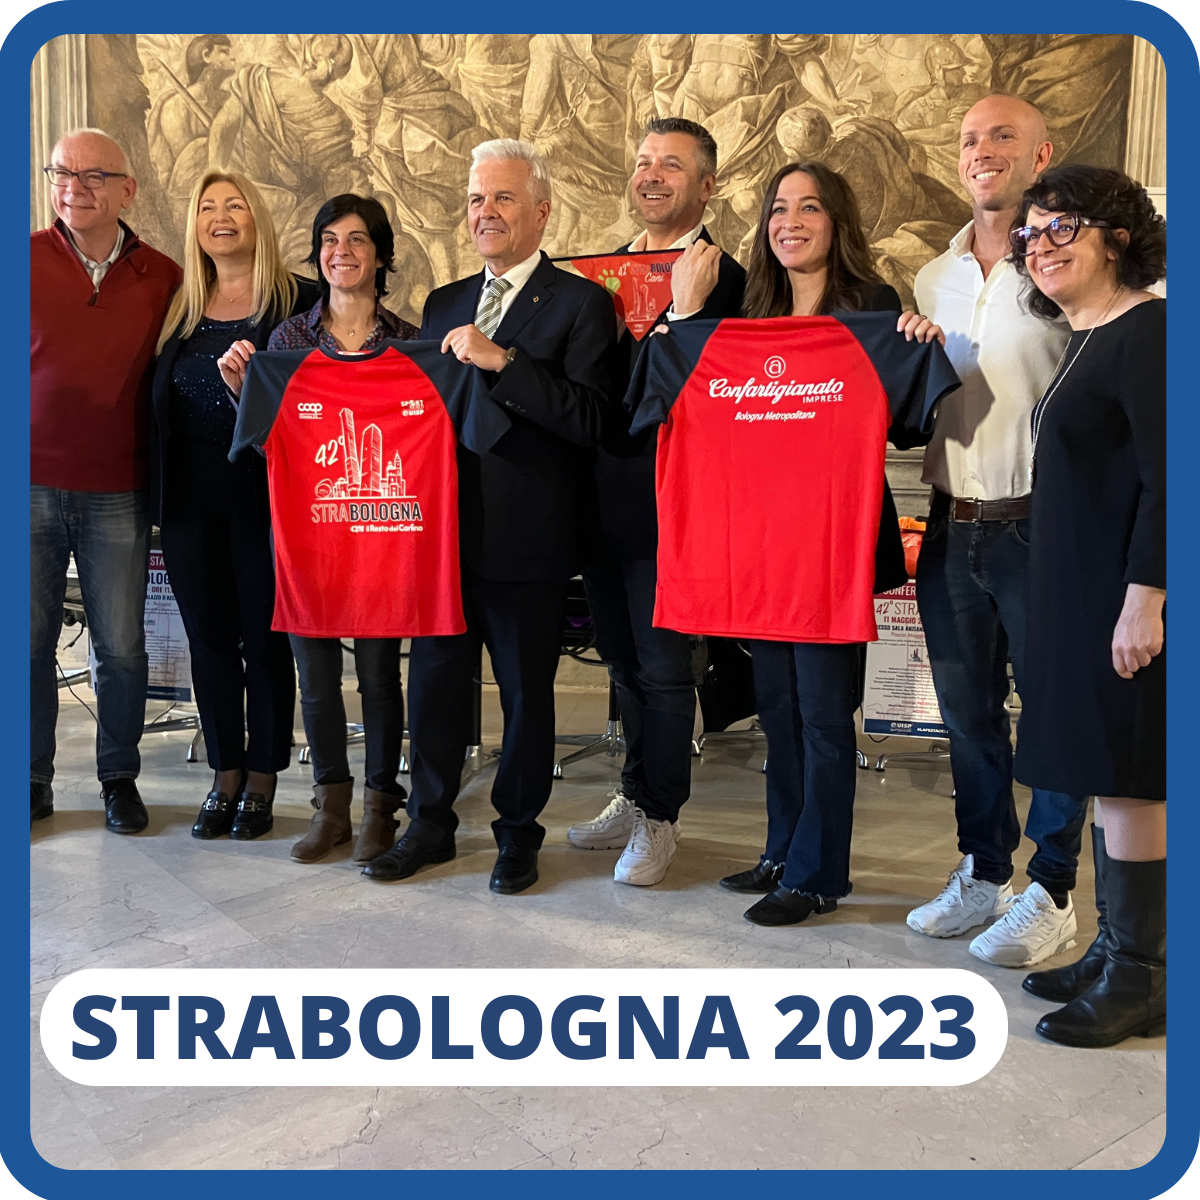 Strabologna 2023 presentazione evento conferenza stampa bologna formart confartigianato palazzo d'accursio uisp